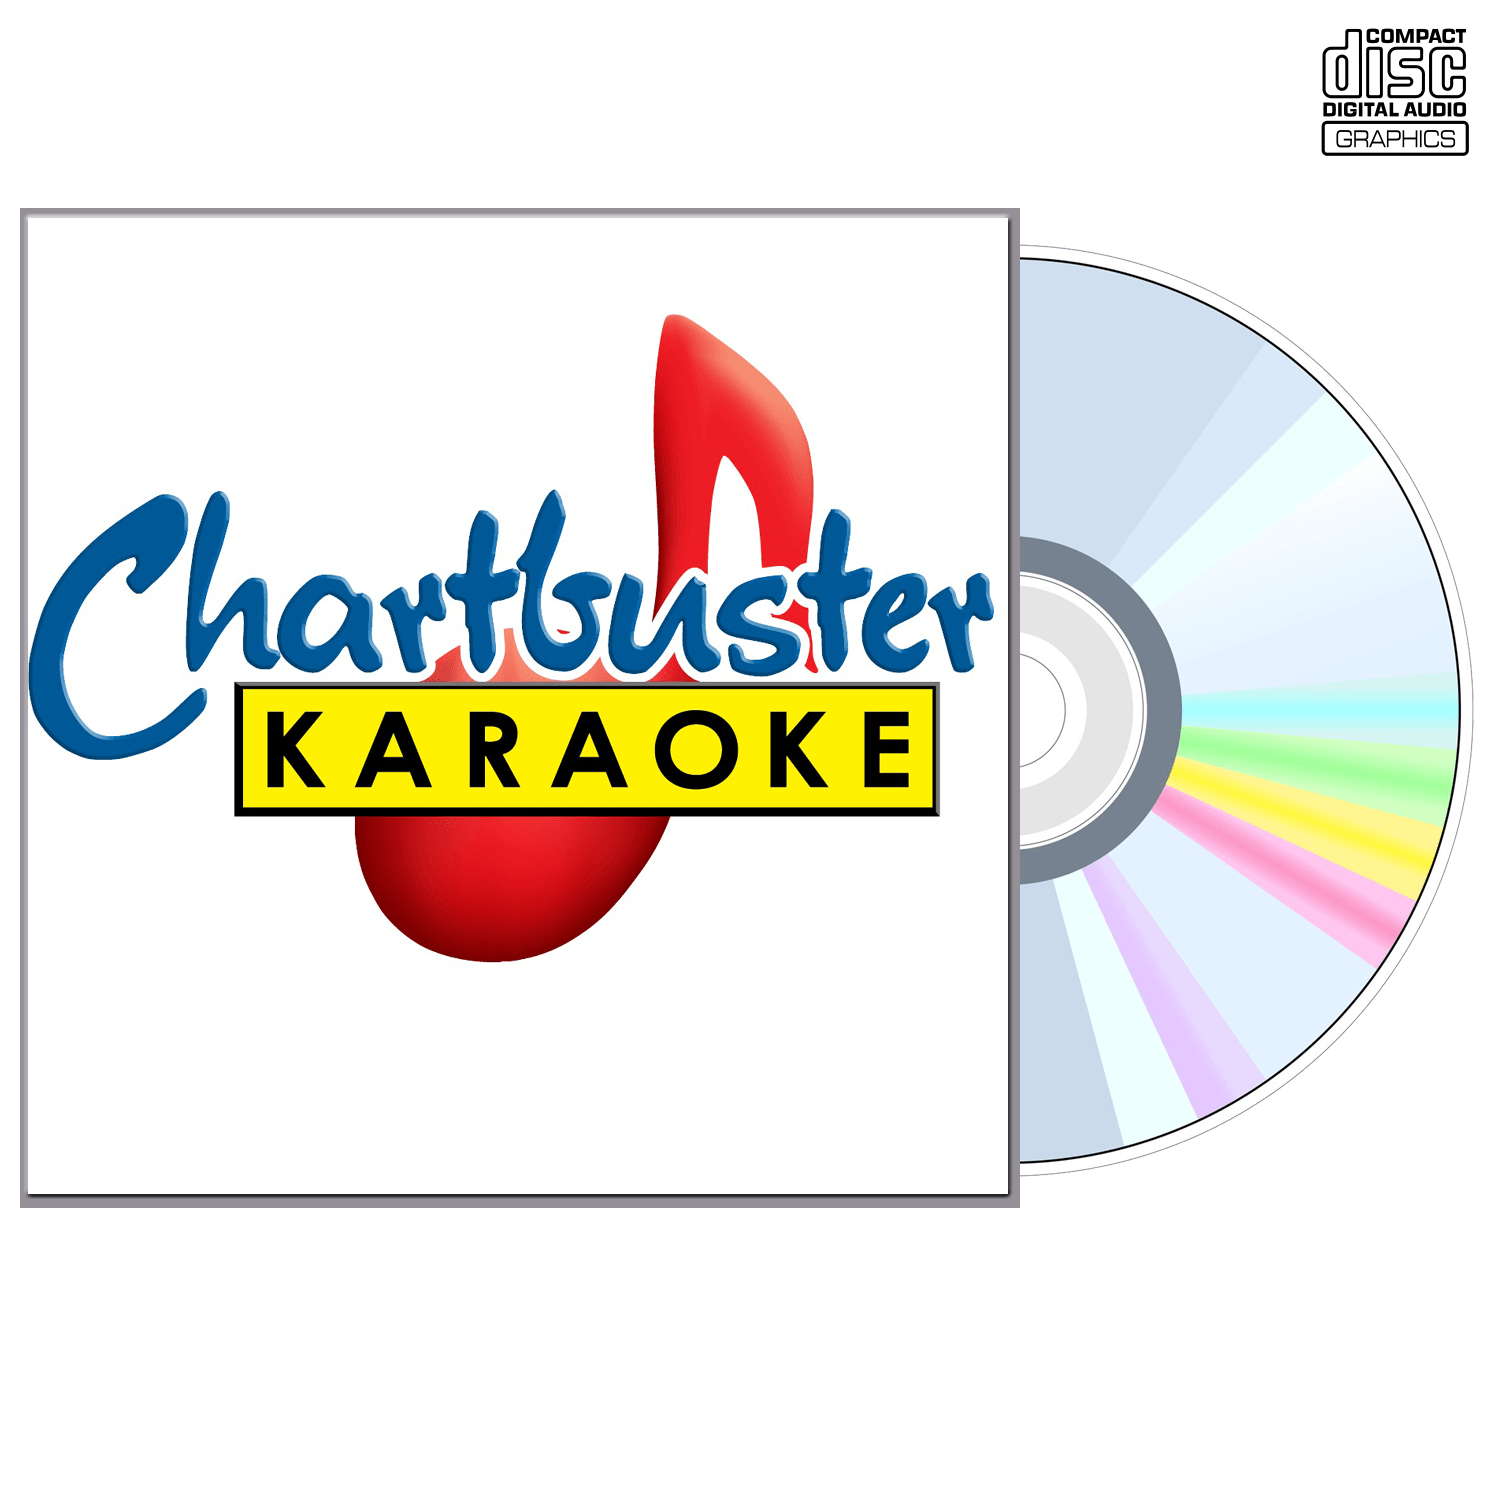 The Who - CD+G - Chartbuster Karaoke - Karaoke Home Entertainment